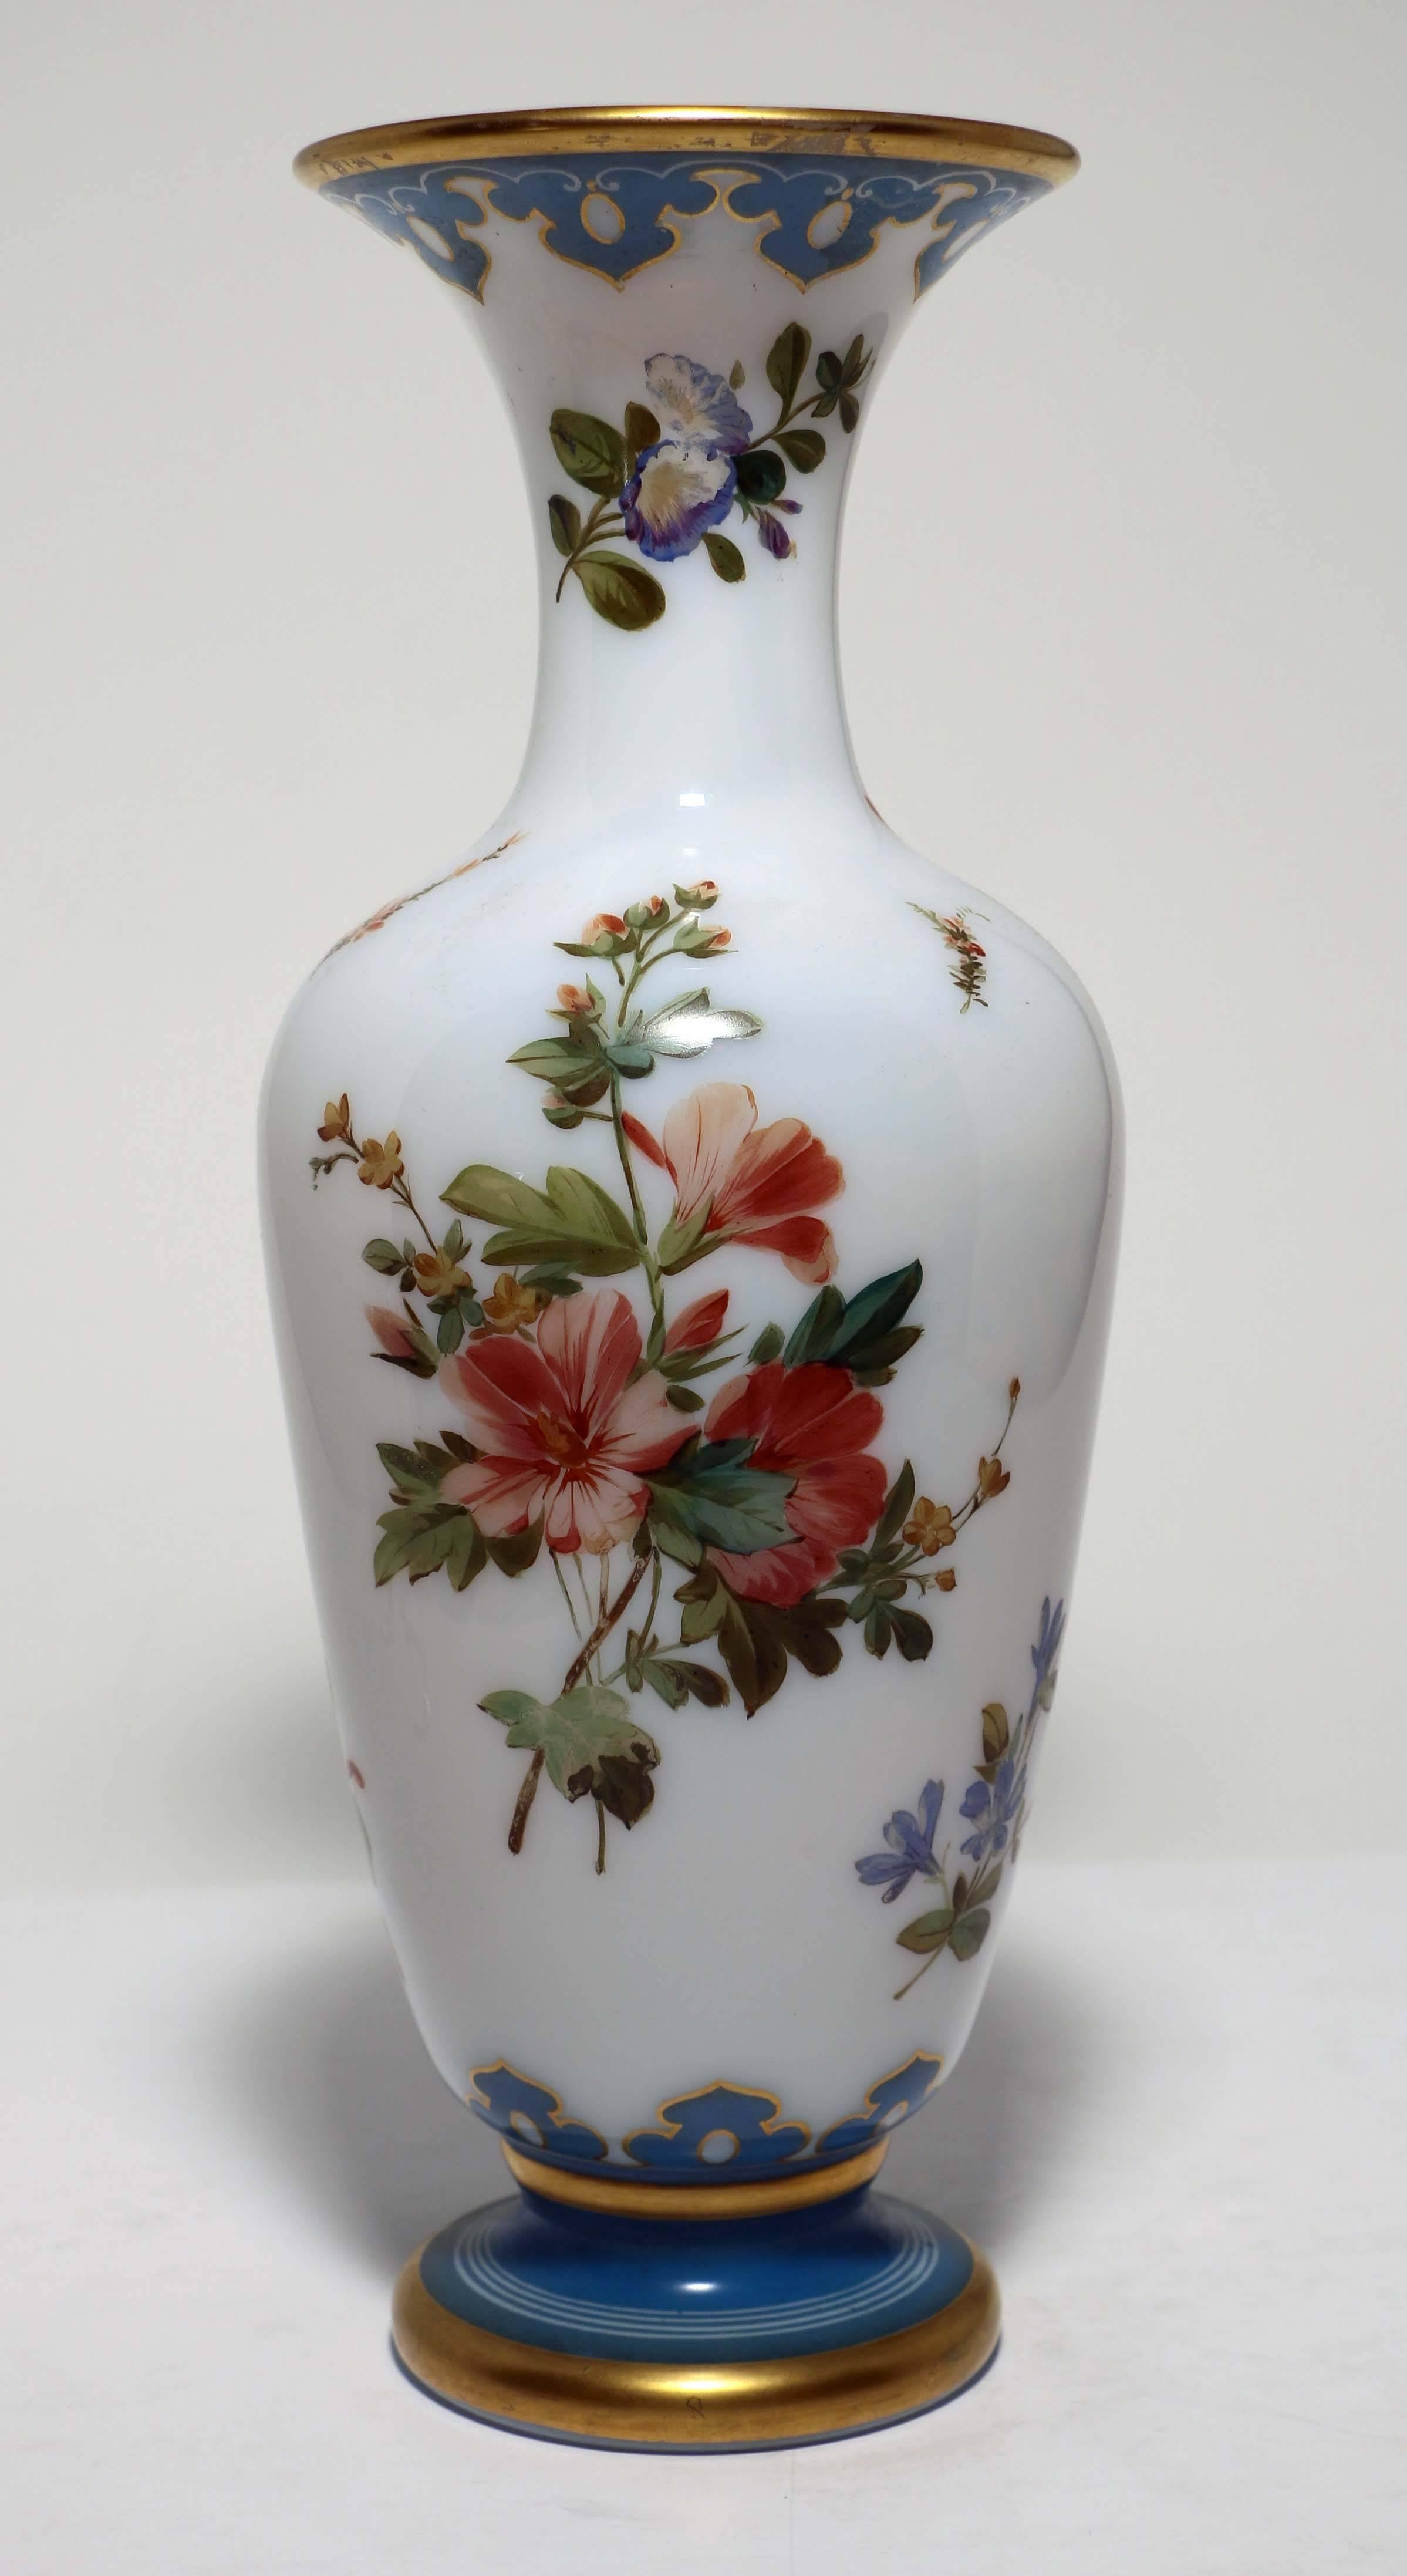 Nous sommes convaincus que ce vase français en opaline est de Baccarat. Il a une forme élégante et élancée de balustre avec un bord et un pied décorés en bleu et dorés. Il se compare très favorablement, en termes de qualité, à d'autres produits